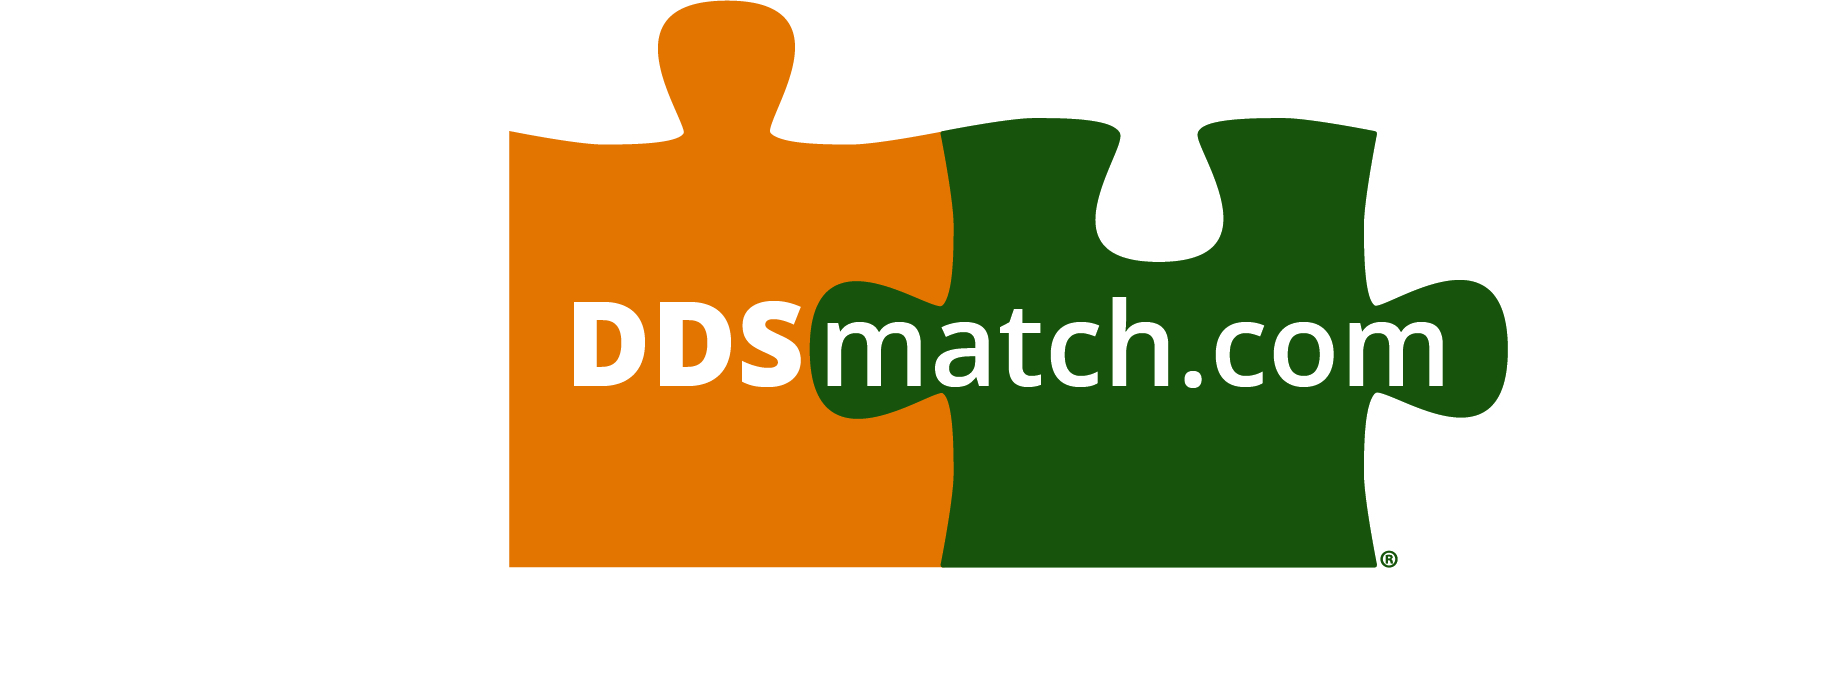 ddsmatch.com - Steve Kampschnieder Logo